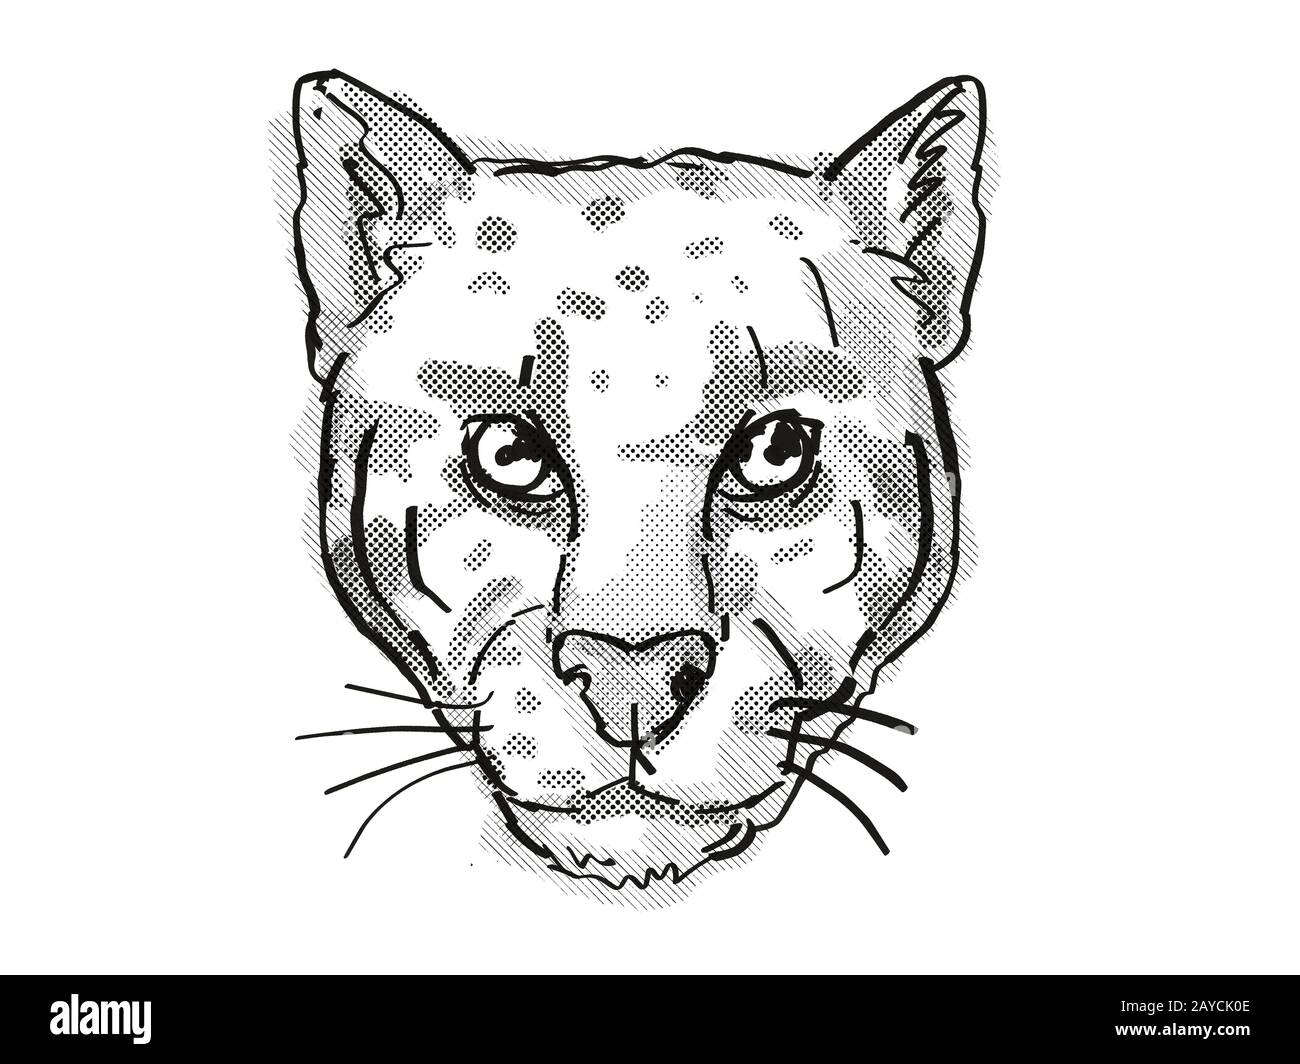 Retro disegno in stile cartoni animati di testa di un leopardo nuvolato o Neofelis nebulosa Foto Stock